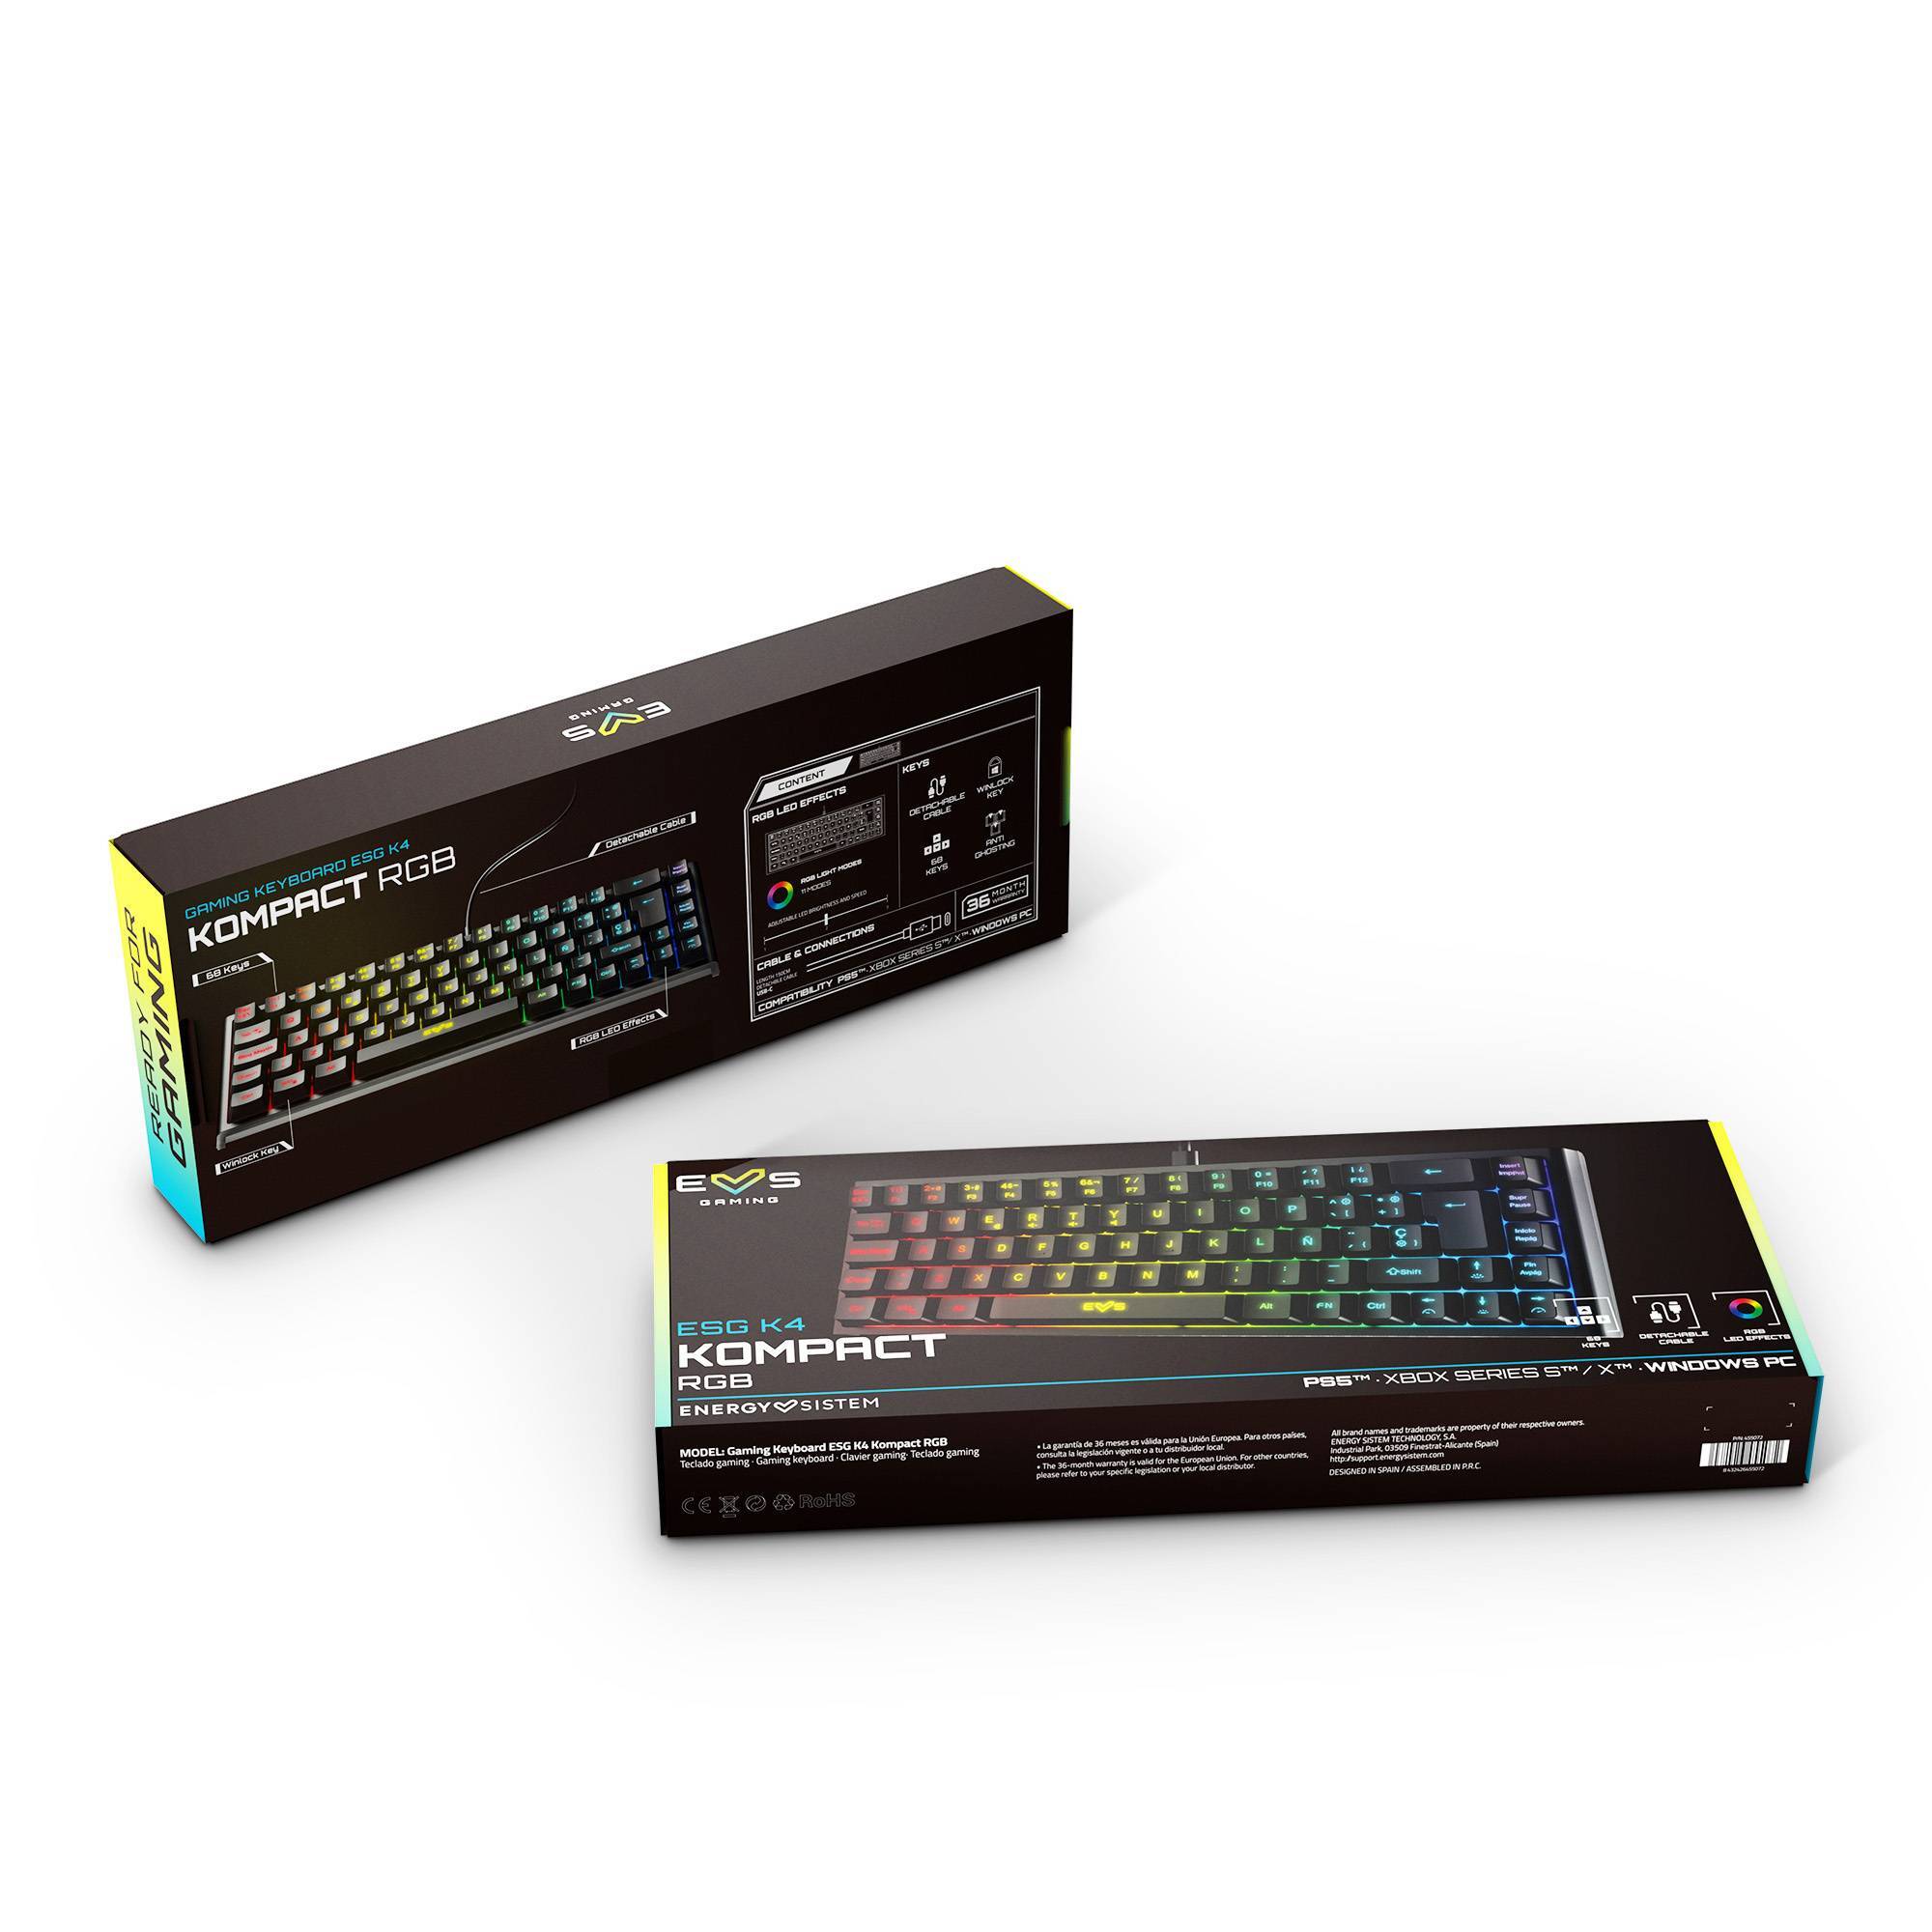 Verpackung der ESG K4 KOMPACT-RGB BLACK Gaming-Tastatur